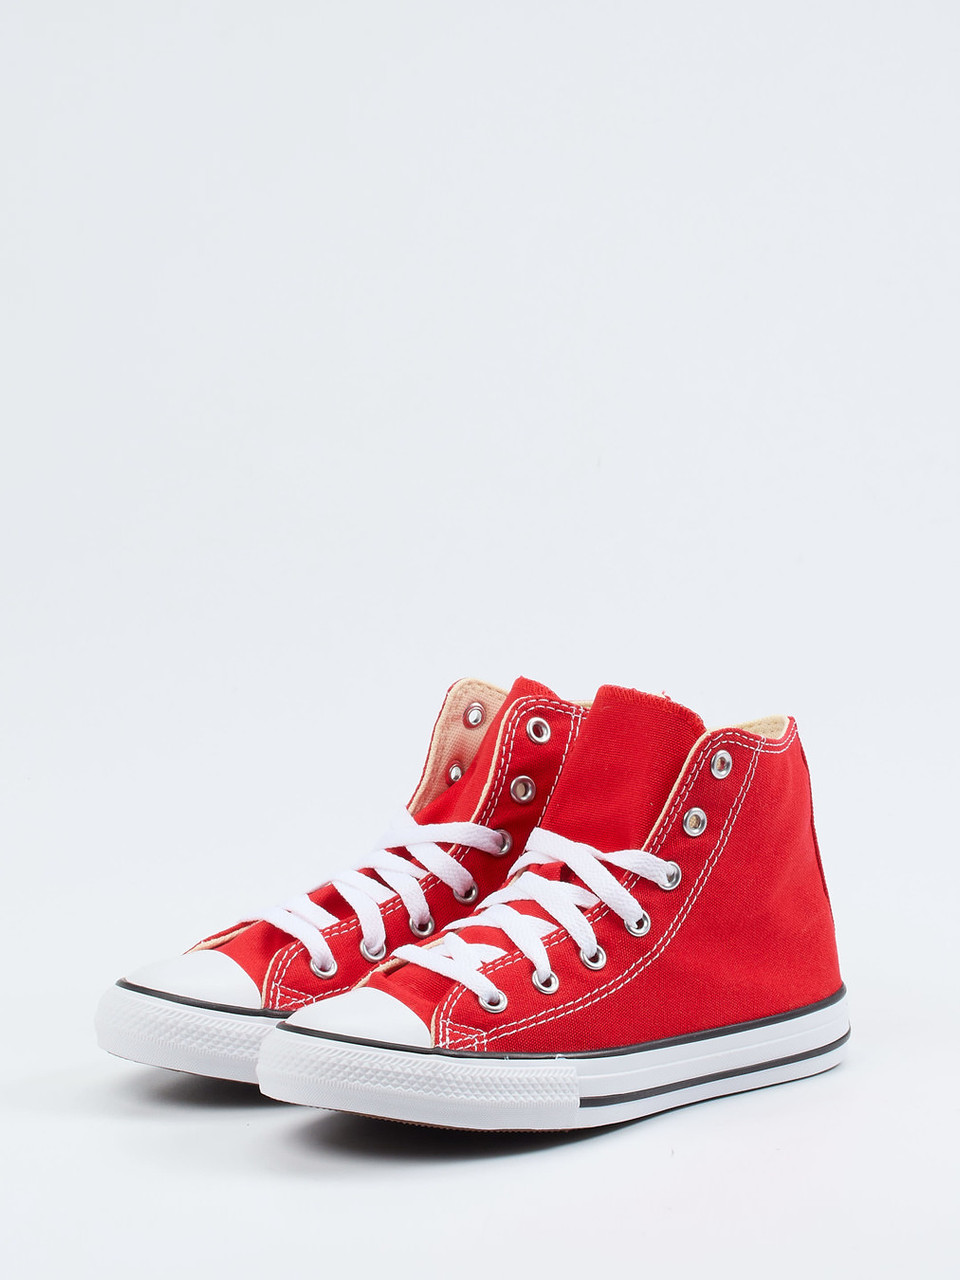 Converse Kinder Zumnorde | in high Sneaker Online-Shop rot kaufen